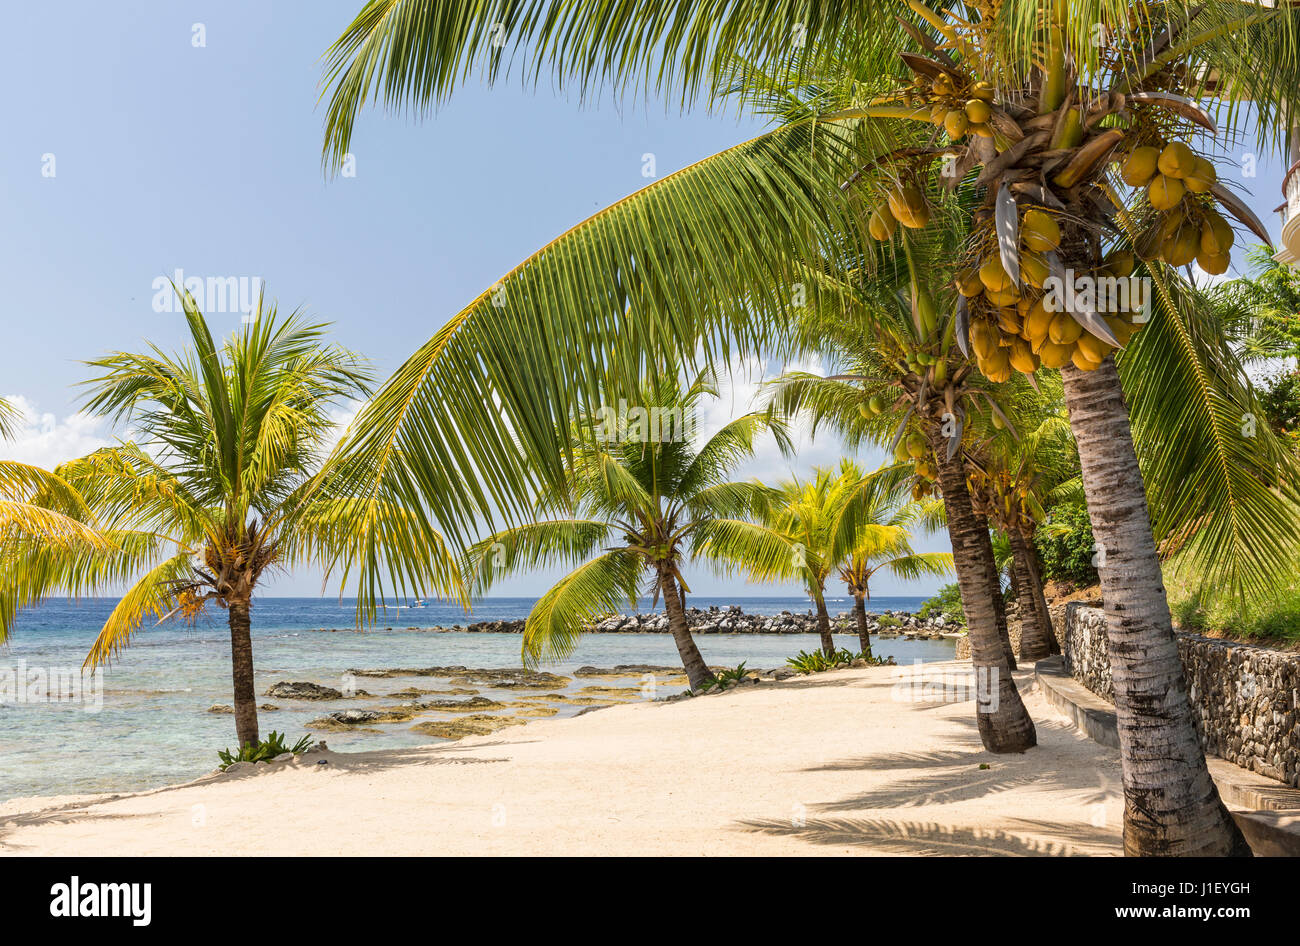 Kokosnuss-Palmen säumen den schönen Sandstrand und Korallenriff am Lighthouse Point in der Nähe der Meridian-Resorts in Roatan, Honduras. Stockfoto